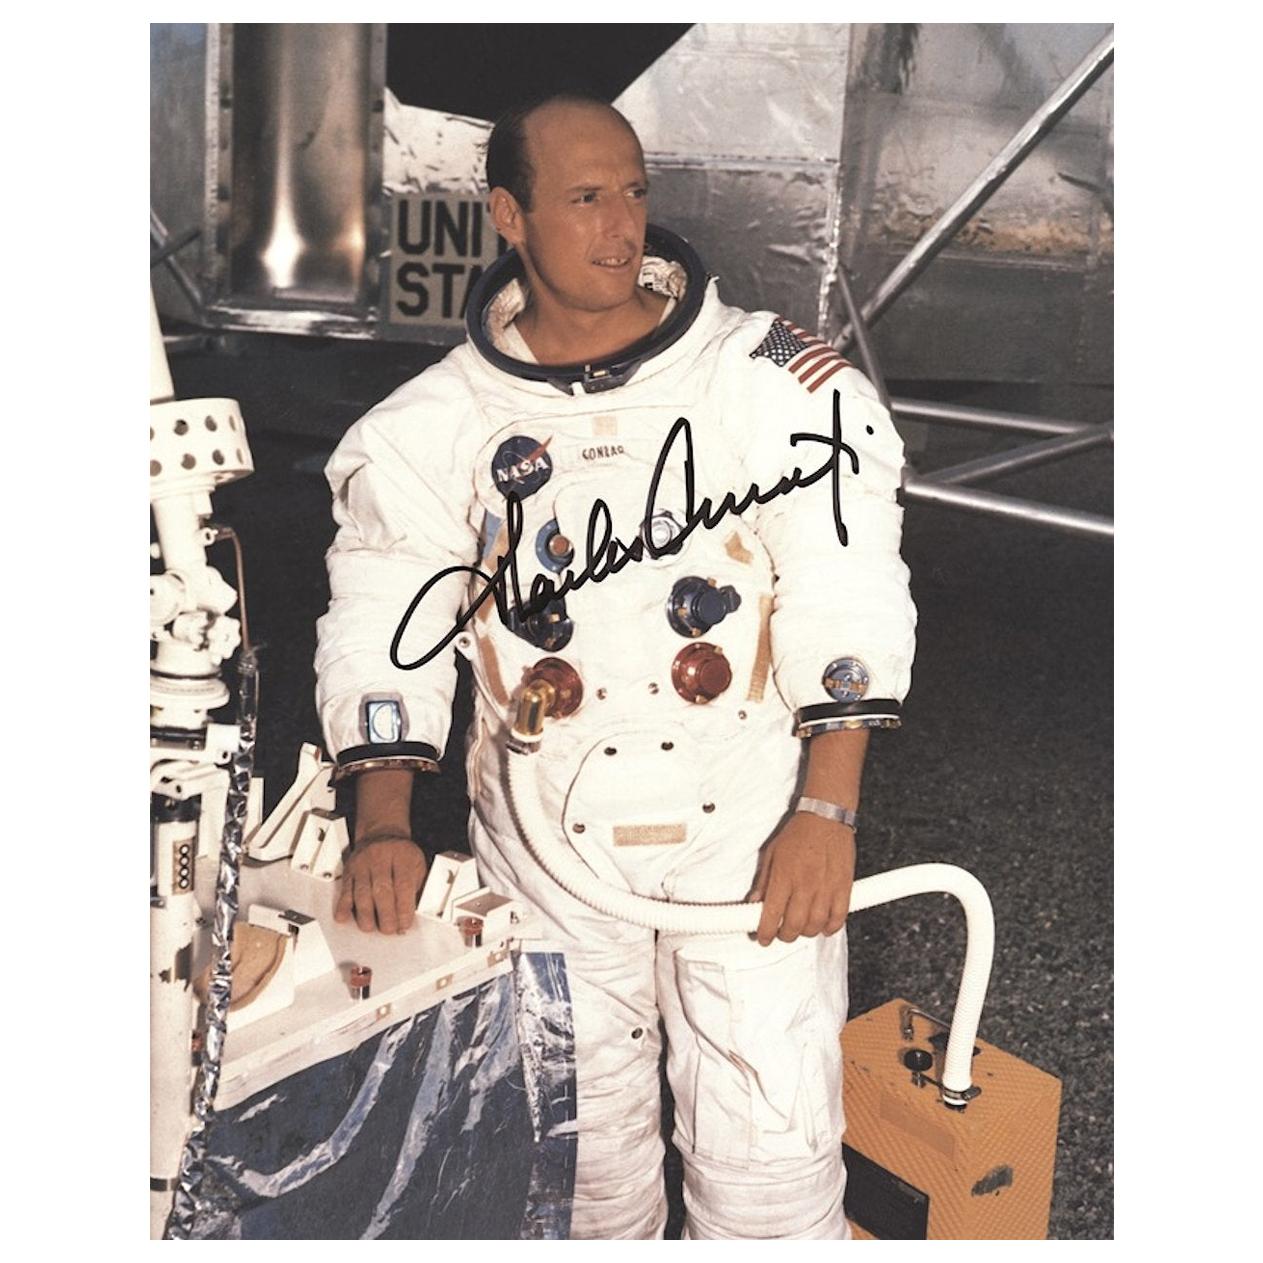 Pete Conrad Apollo 12 Signed 1969 Photograph Black and White